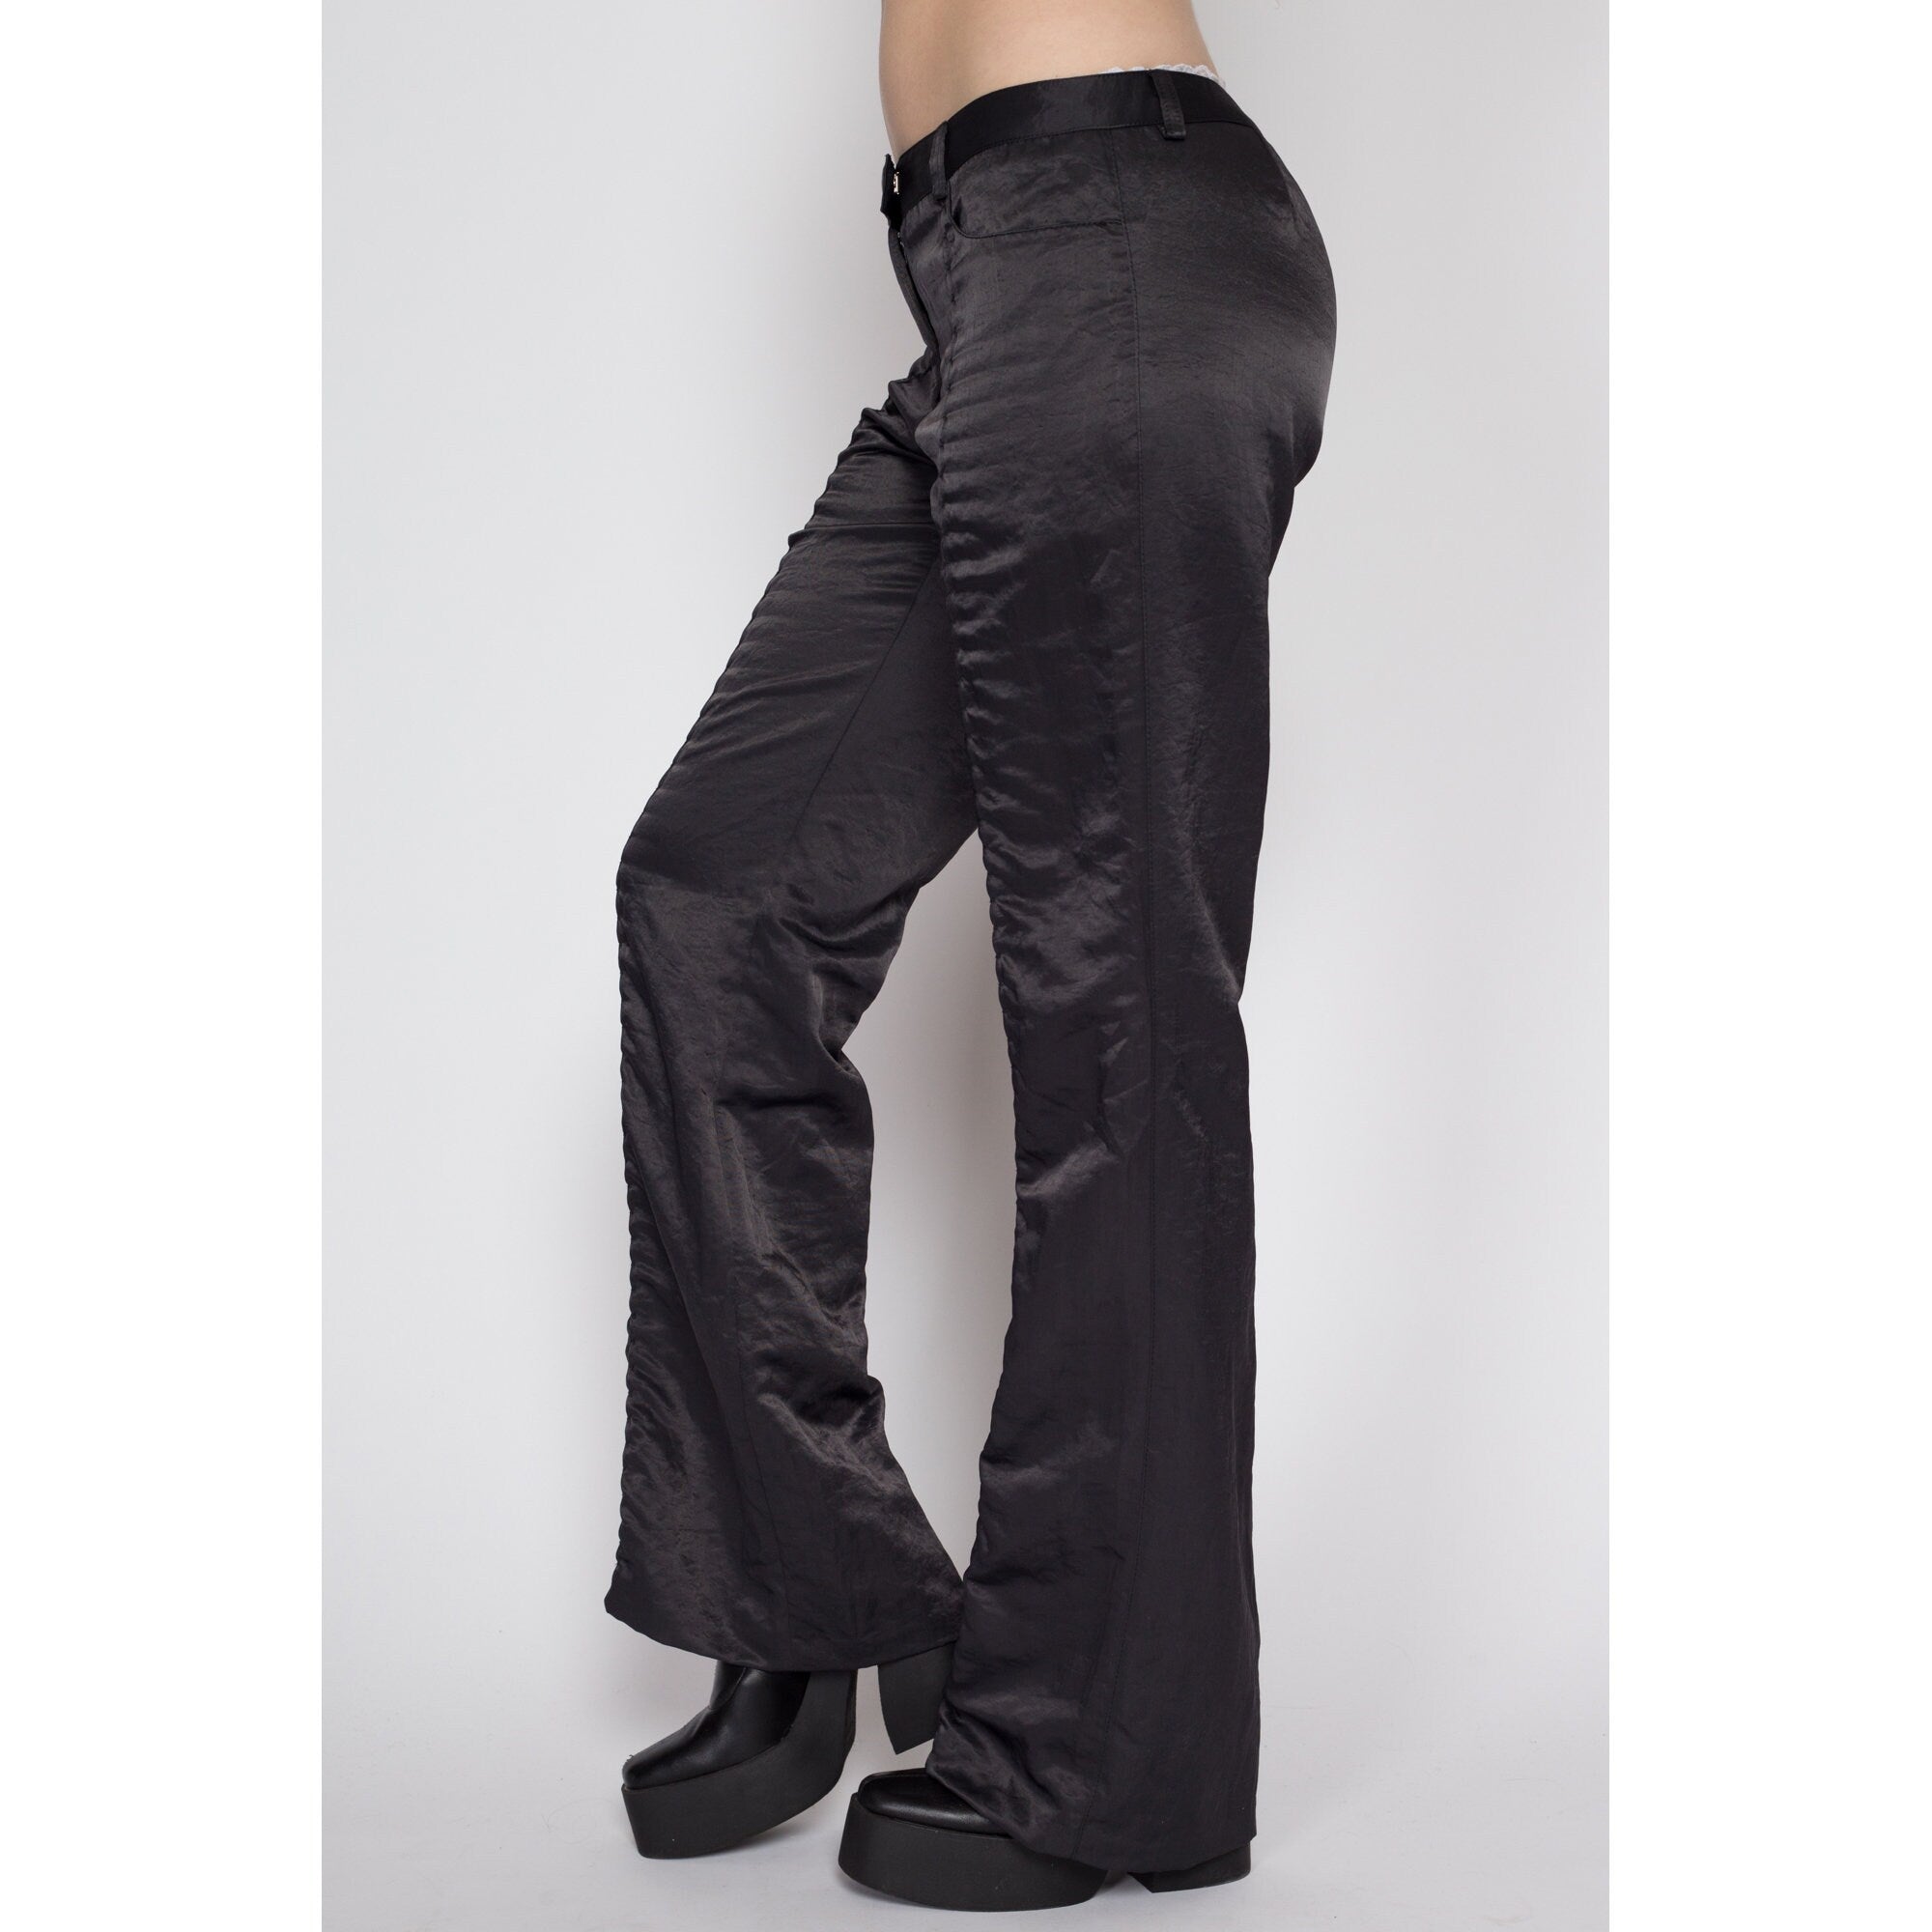 90s vintage flare-slacks pants